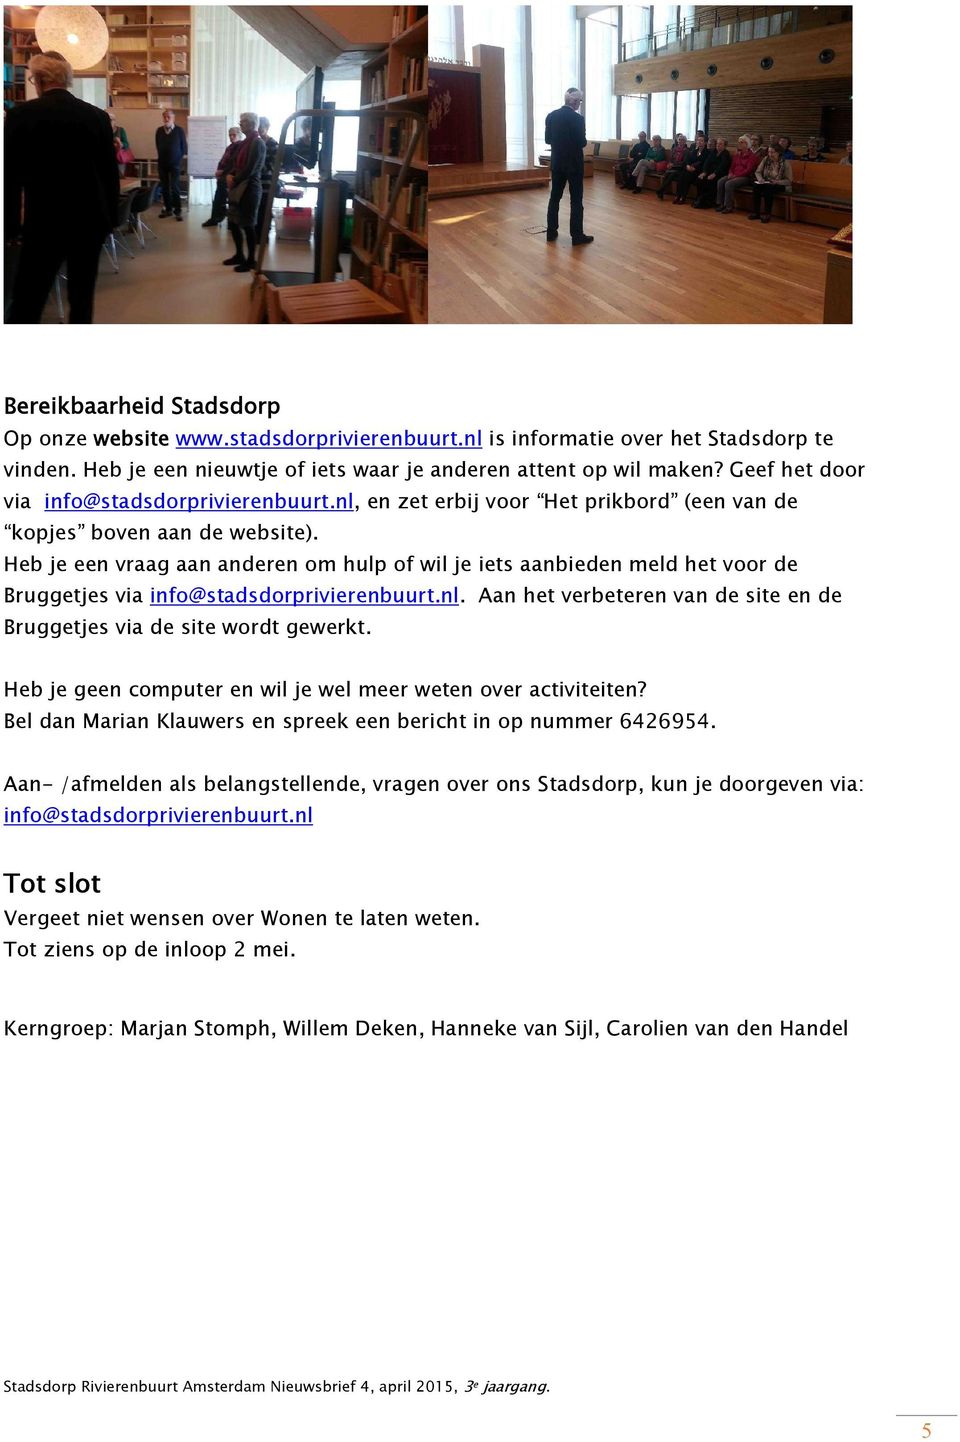 Heb je een vraag aan anderen om hulp of wil je iets aanbieden meld het voor de Bruggetjes via info@stadsdorprivierenbuurt.nl. Aan het verbeteren van de site en de Bruggetjes via de site wordt gewerkt.